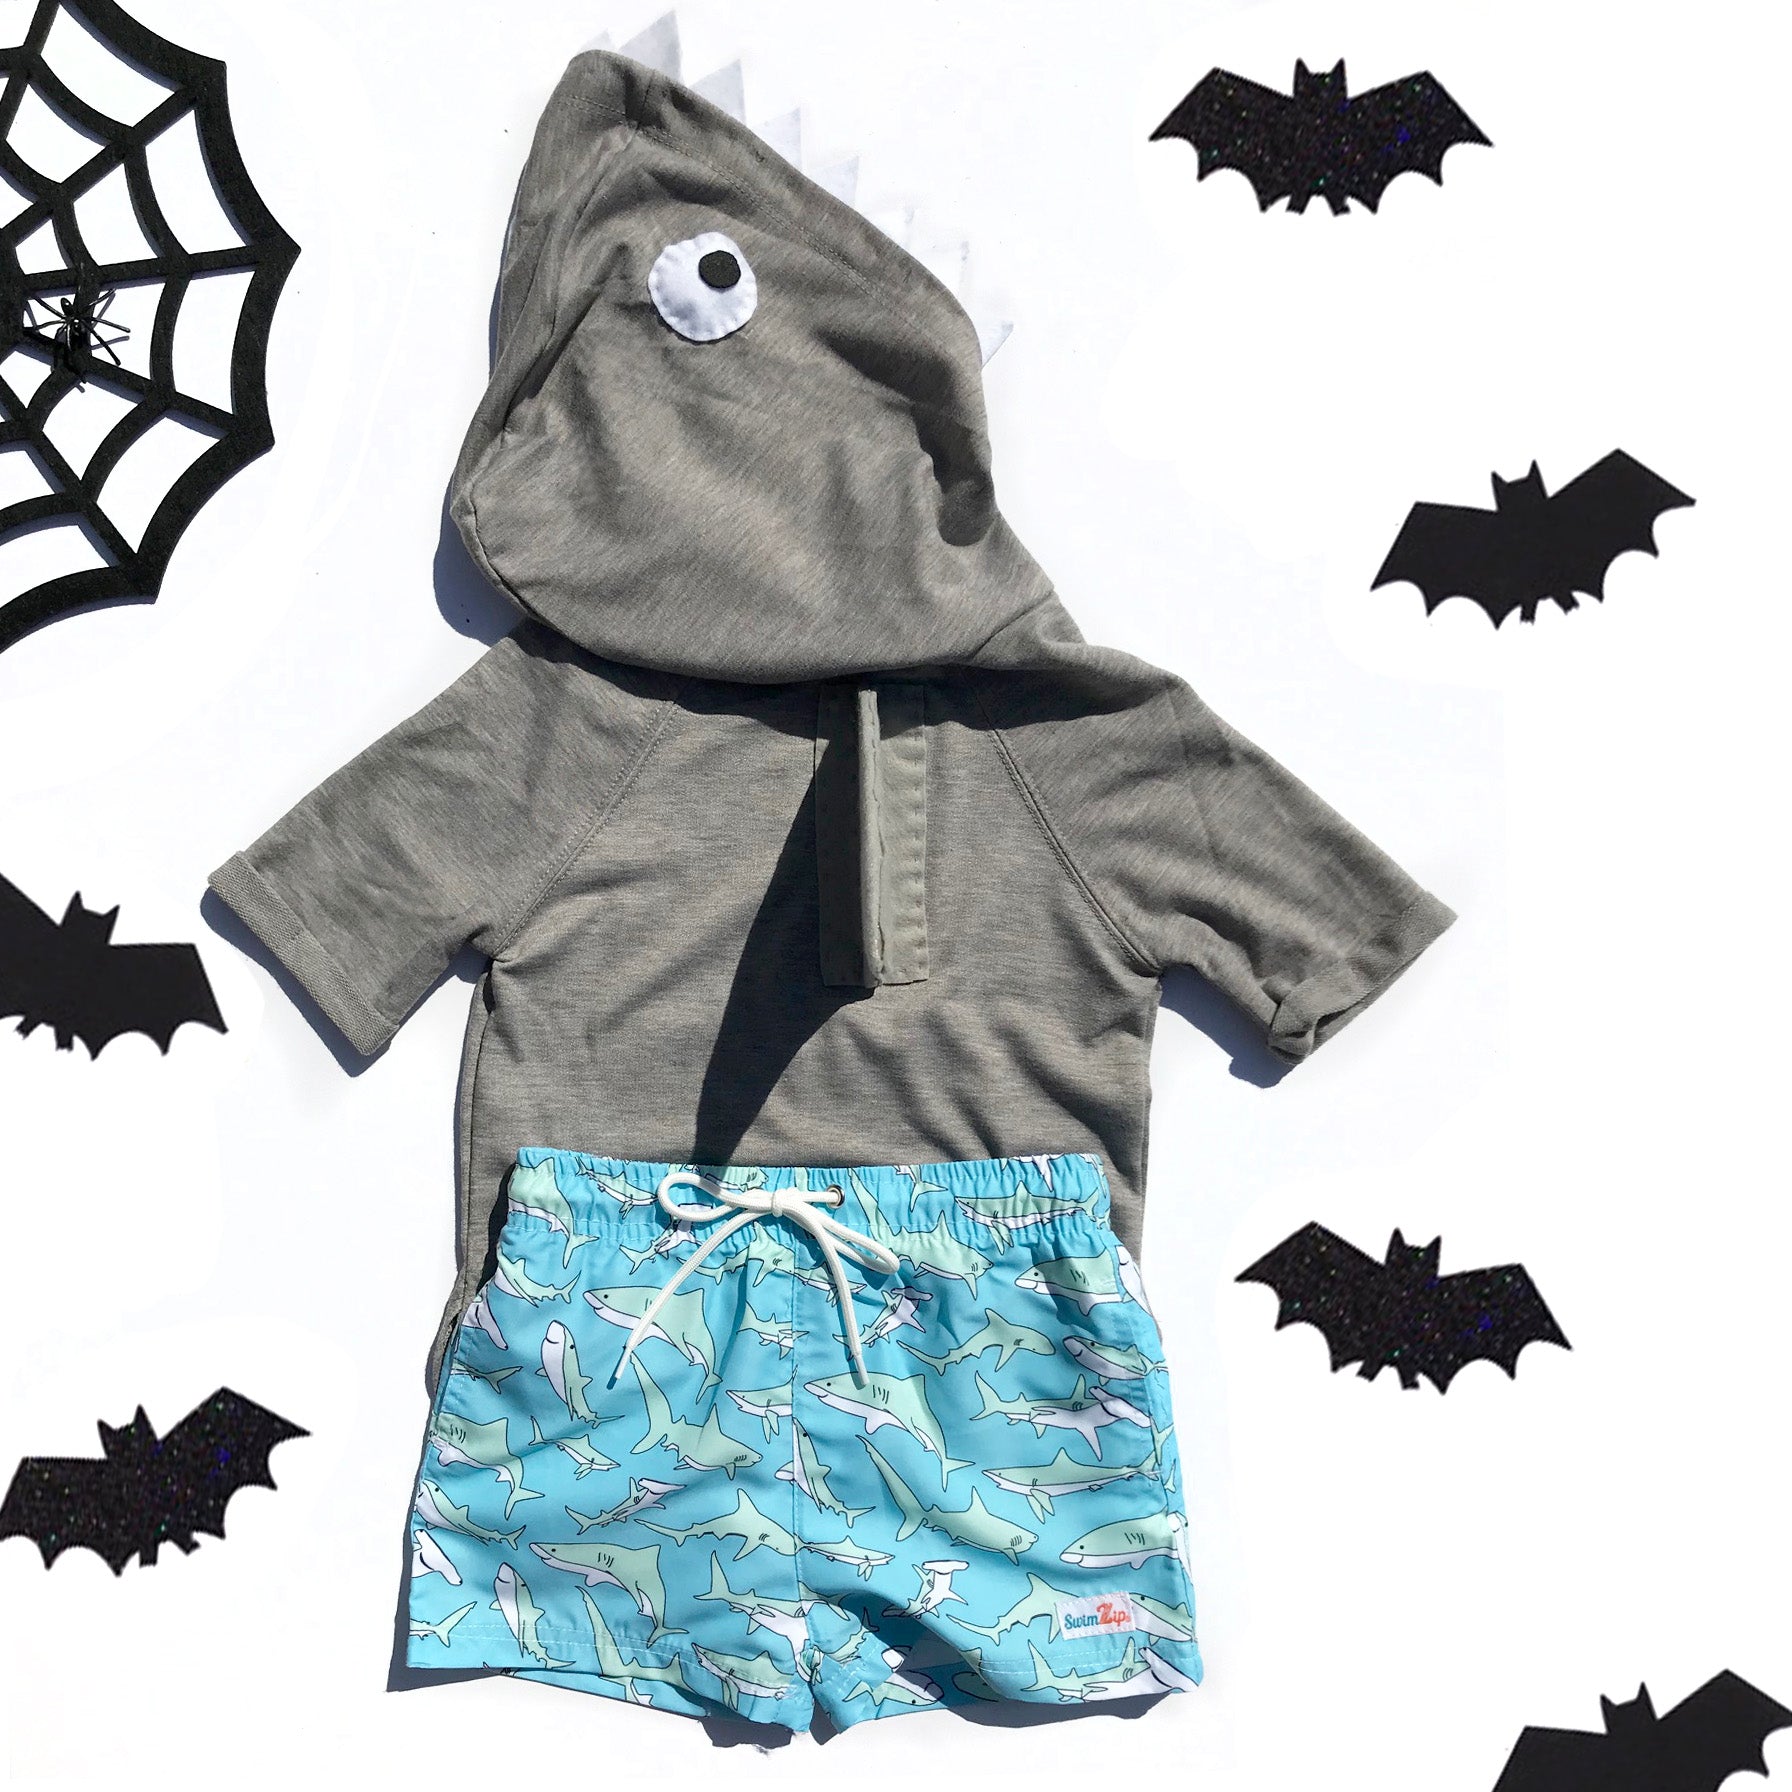 Easy DIY Shark Halloween Costume with SwimZip!